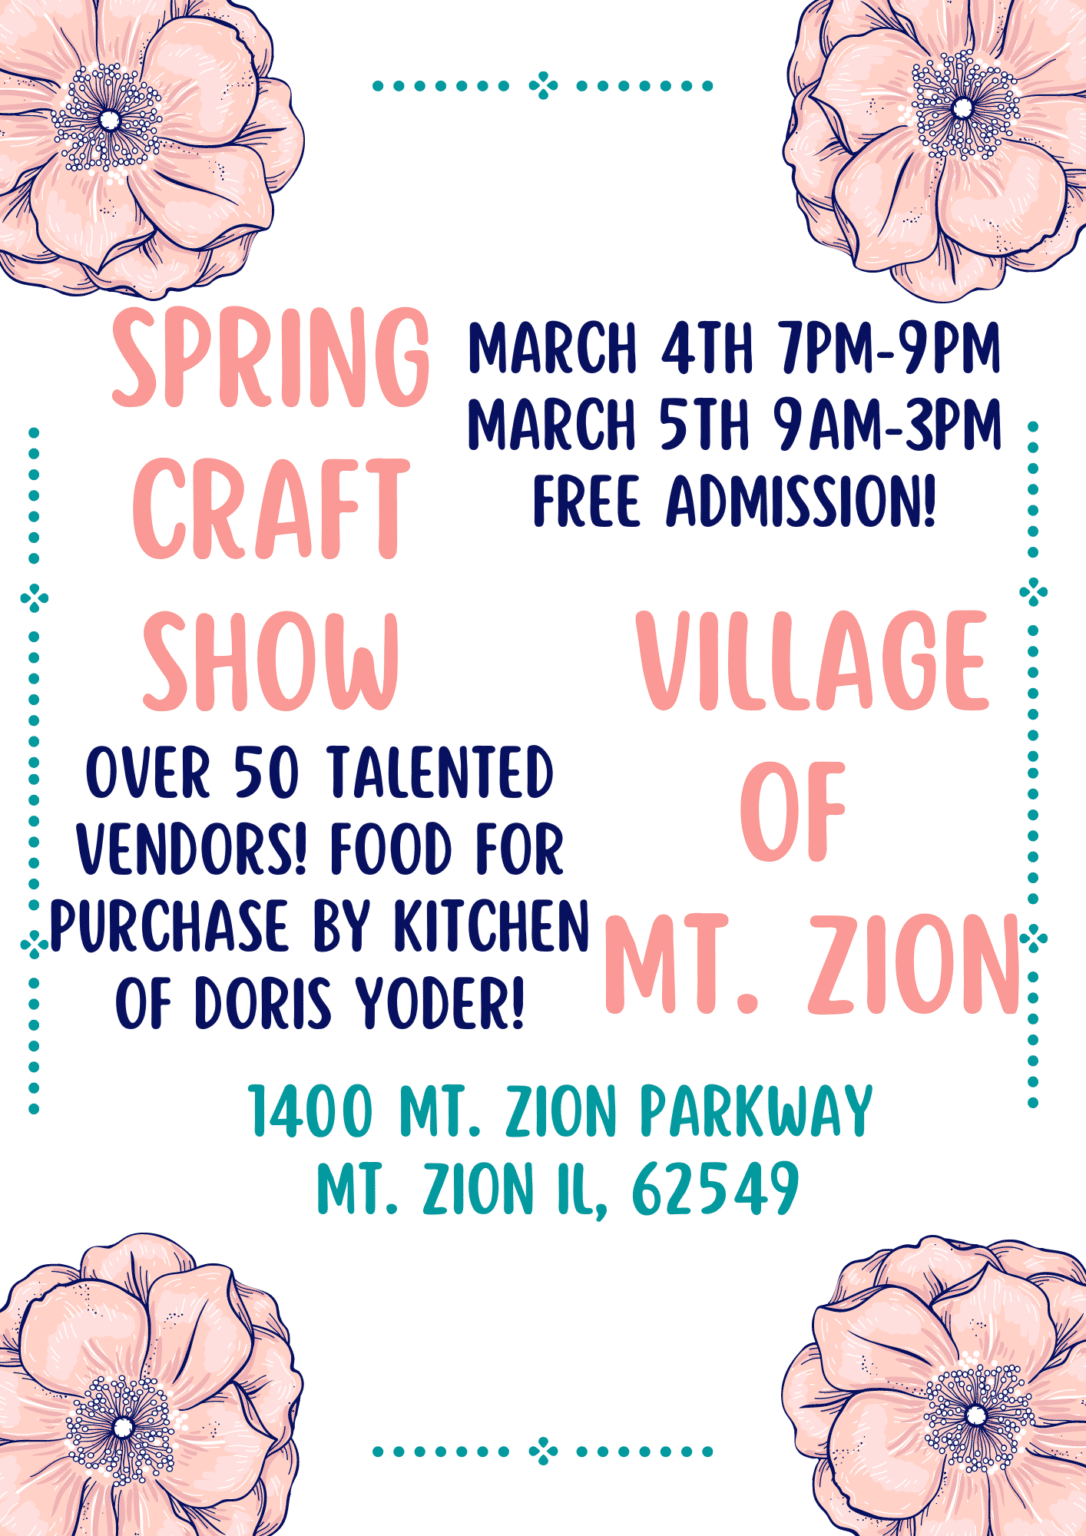 Village of Mt. Zion Craft Show Mt. Zion Convention Center